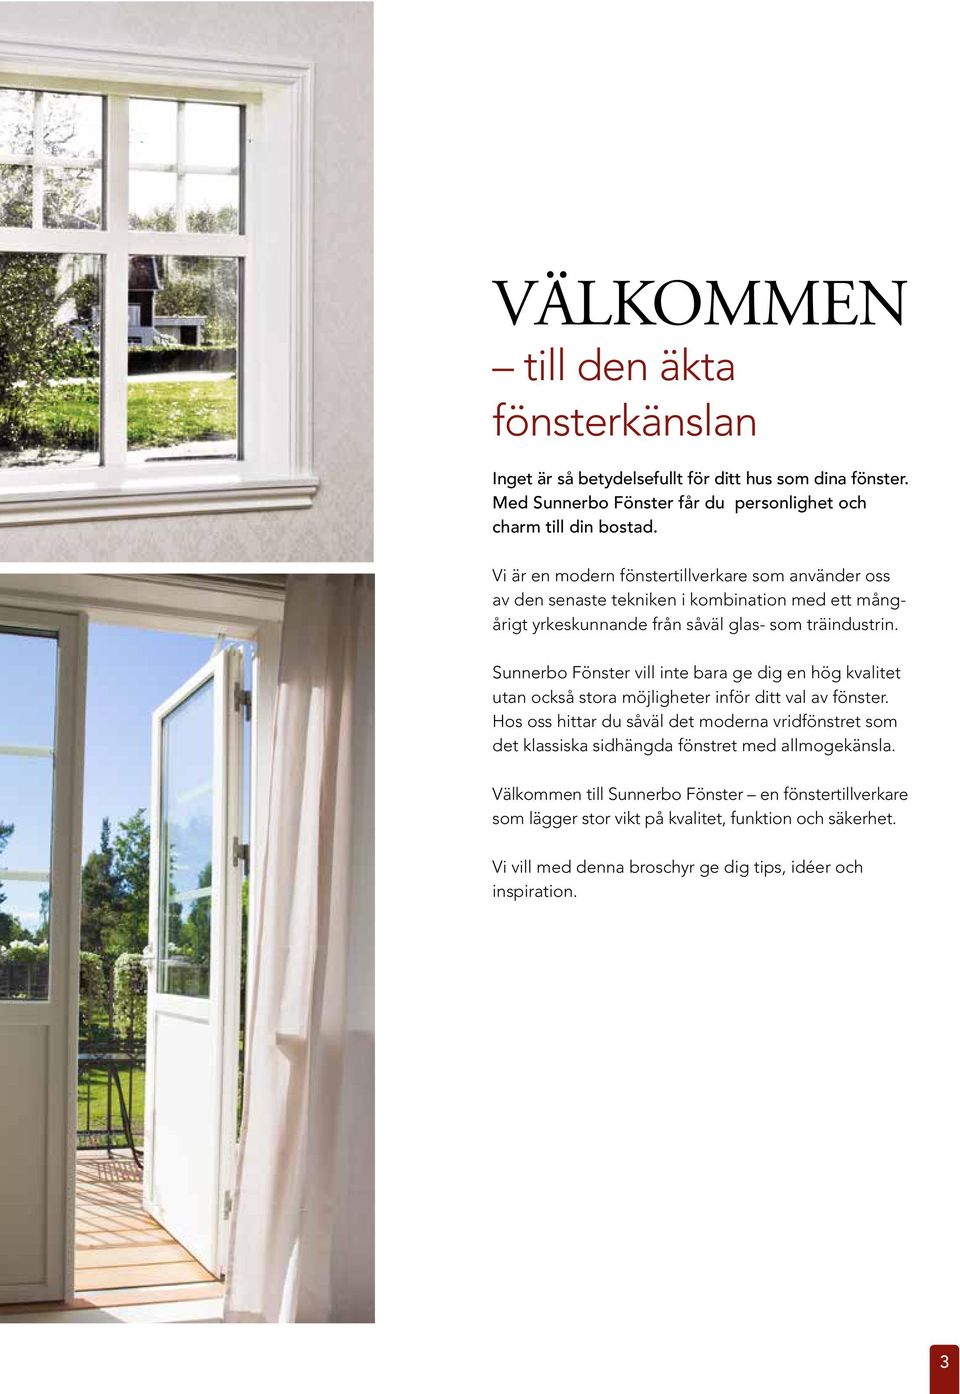 Sunnerbo Fönster vill inte bara ge dig en hög kvalitet utan också stora möjligheter inför ditt val av fönster.